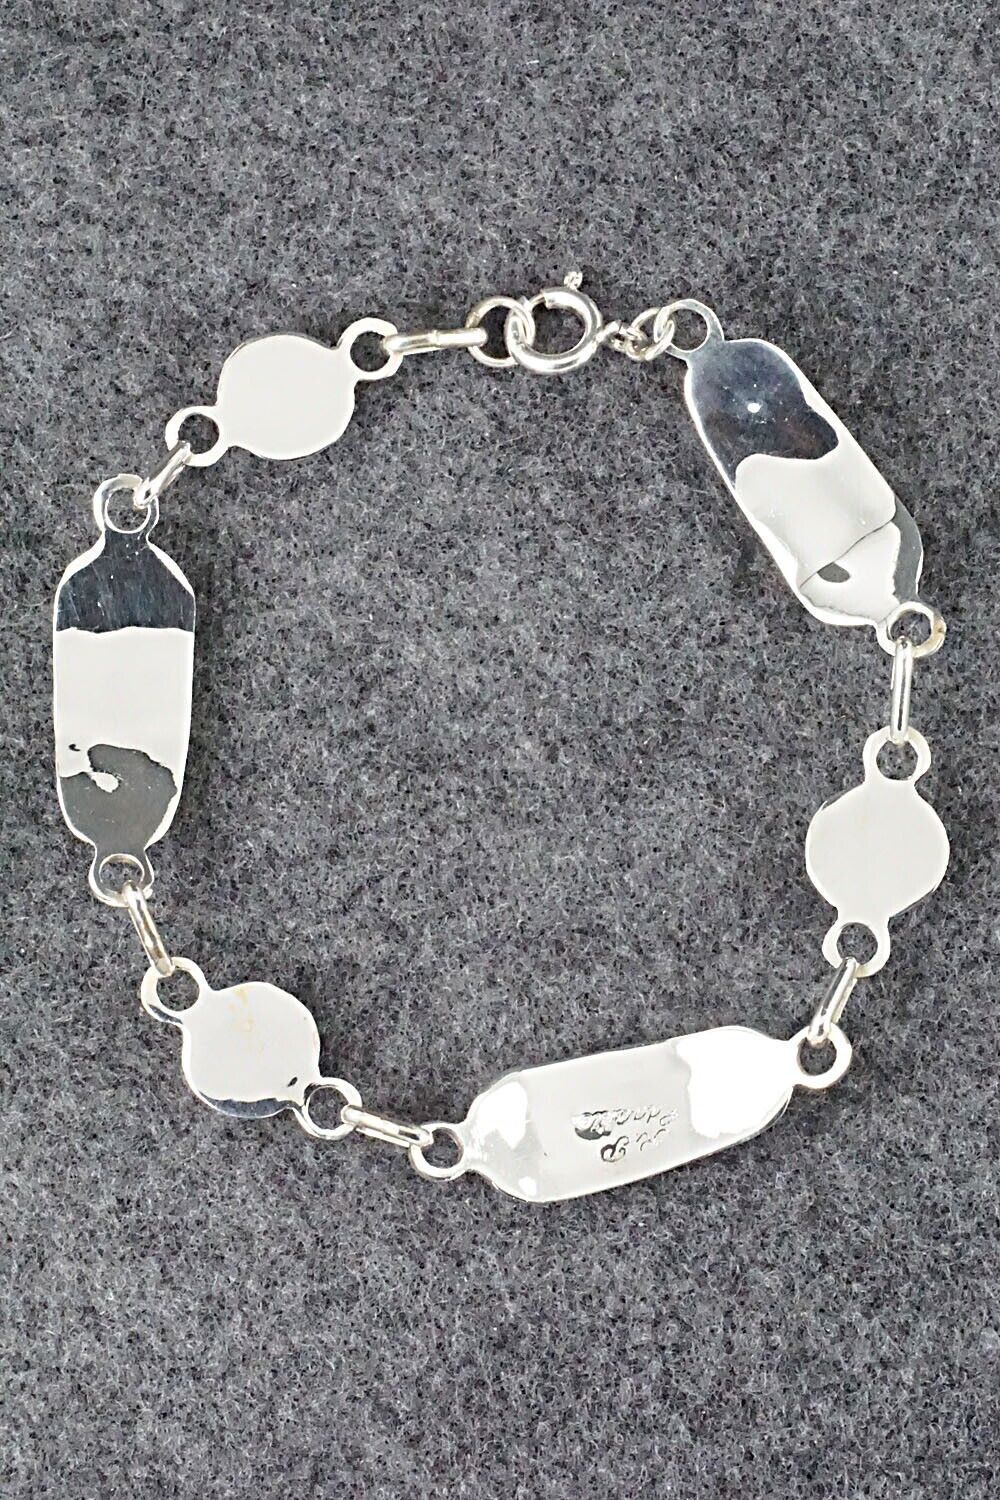 Multi Stone & Sterling Silver Link Bracelet - Patty Edaakie